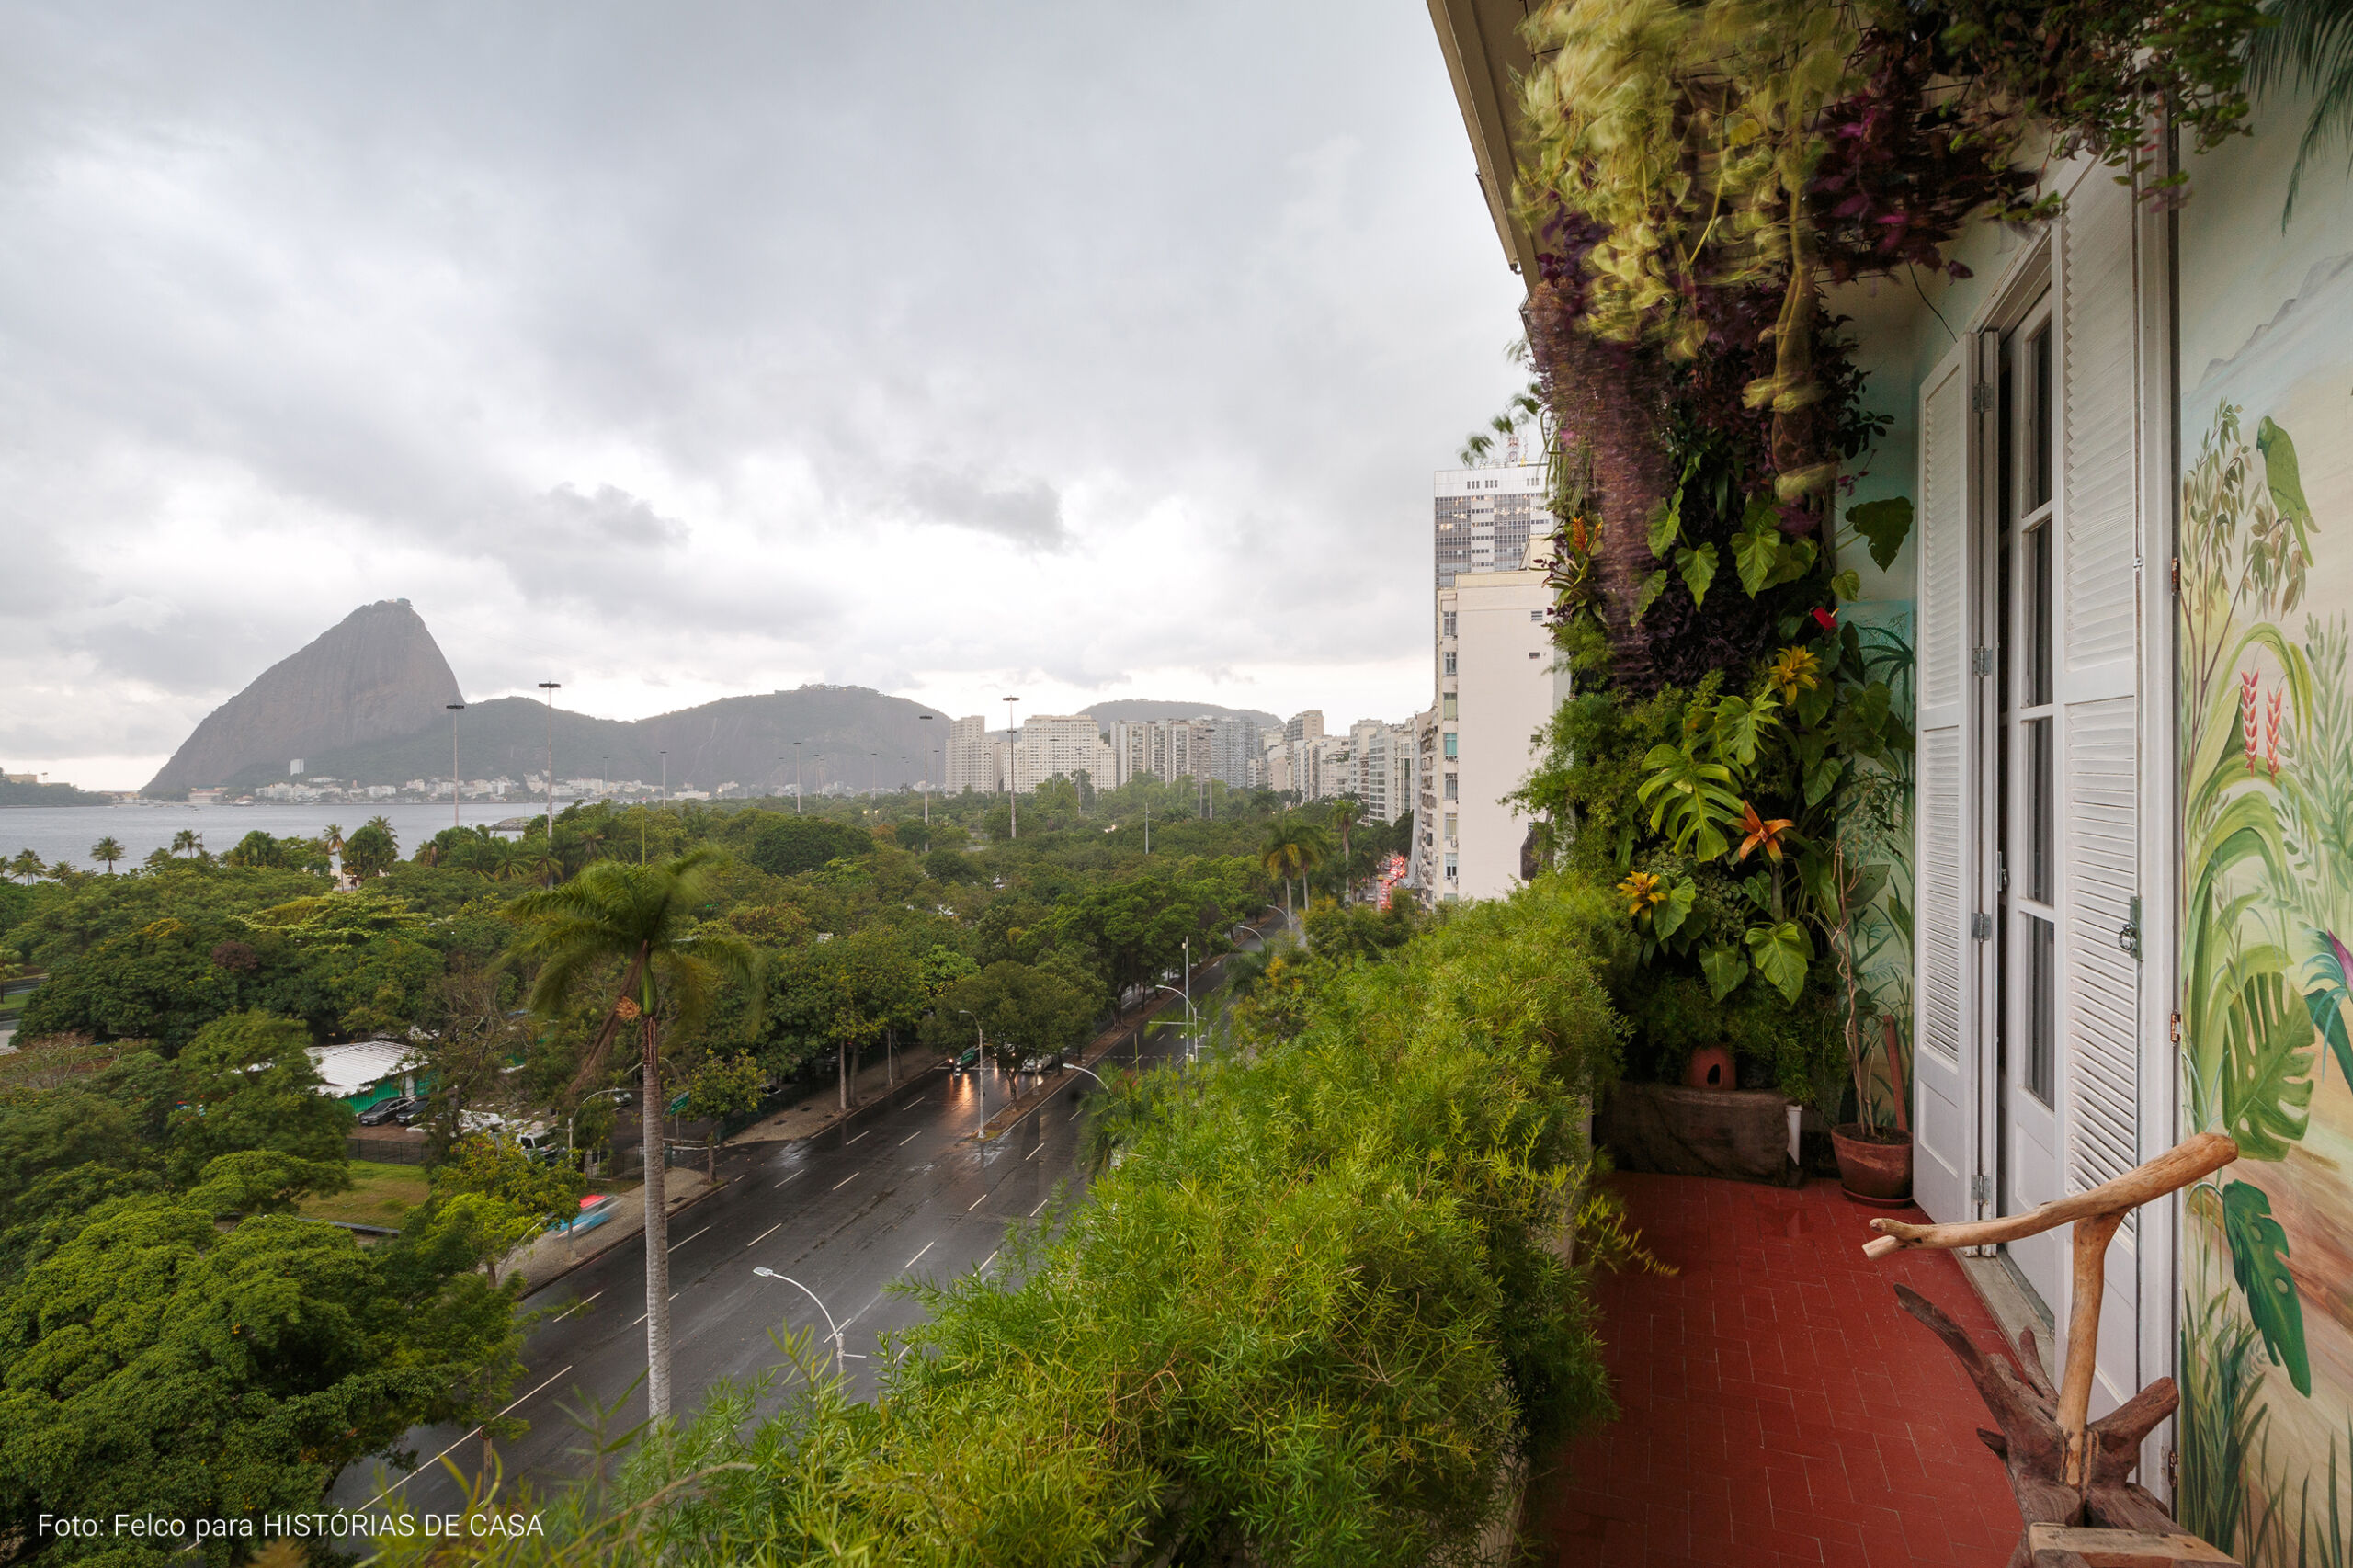 Apartamento no Rio de Janeiro de Gigi Barreto, com decoração cheia de plantas, quadros e pinturas nas paredes